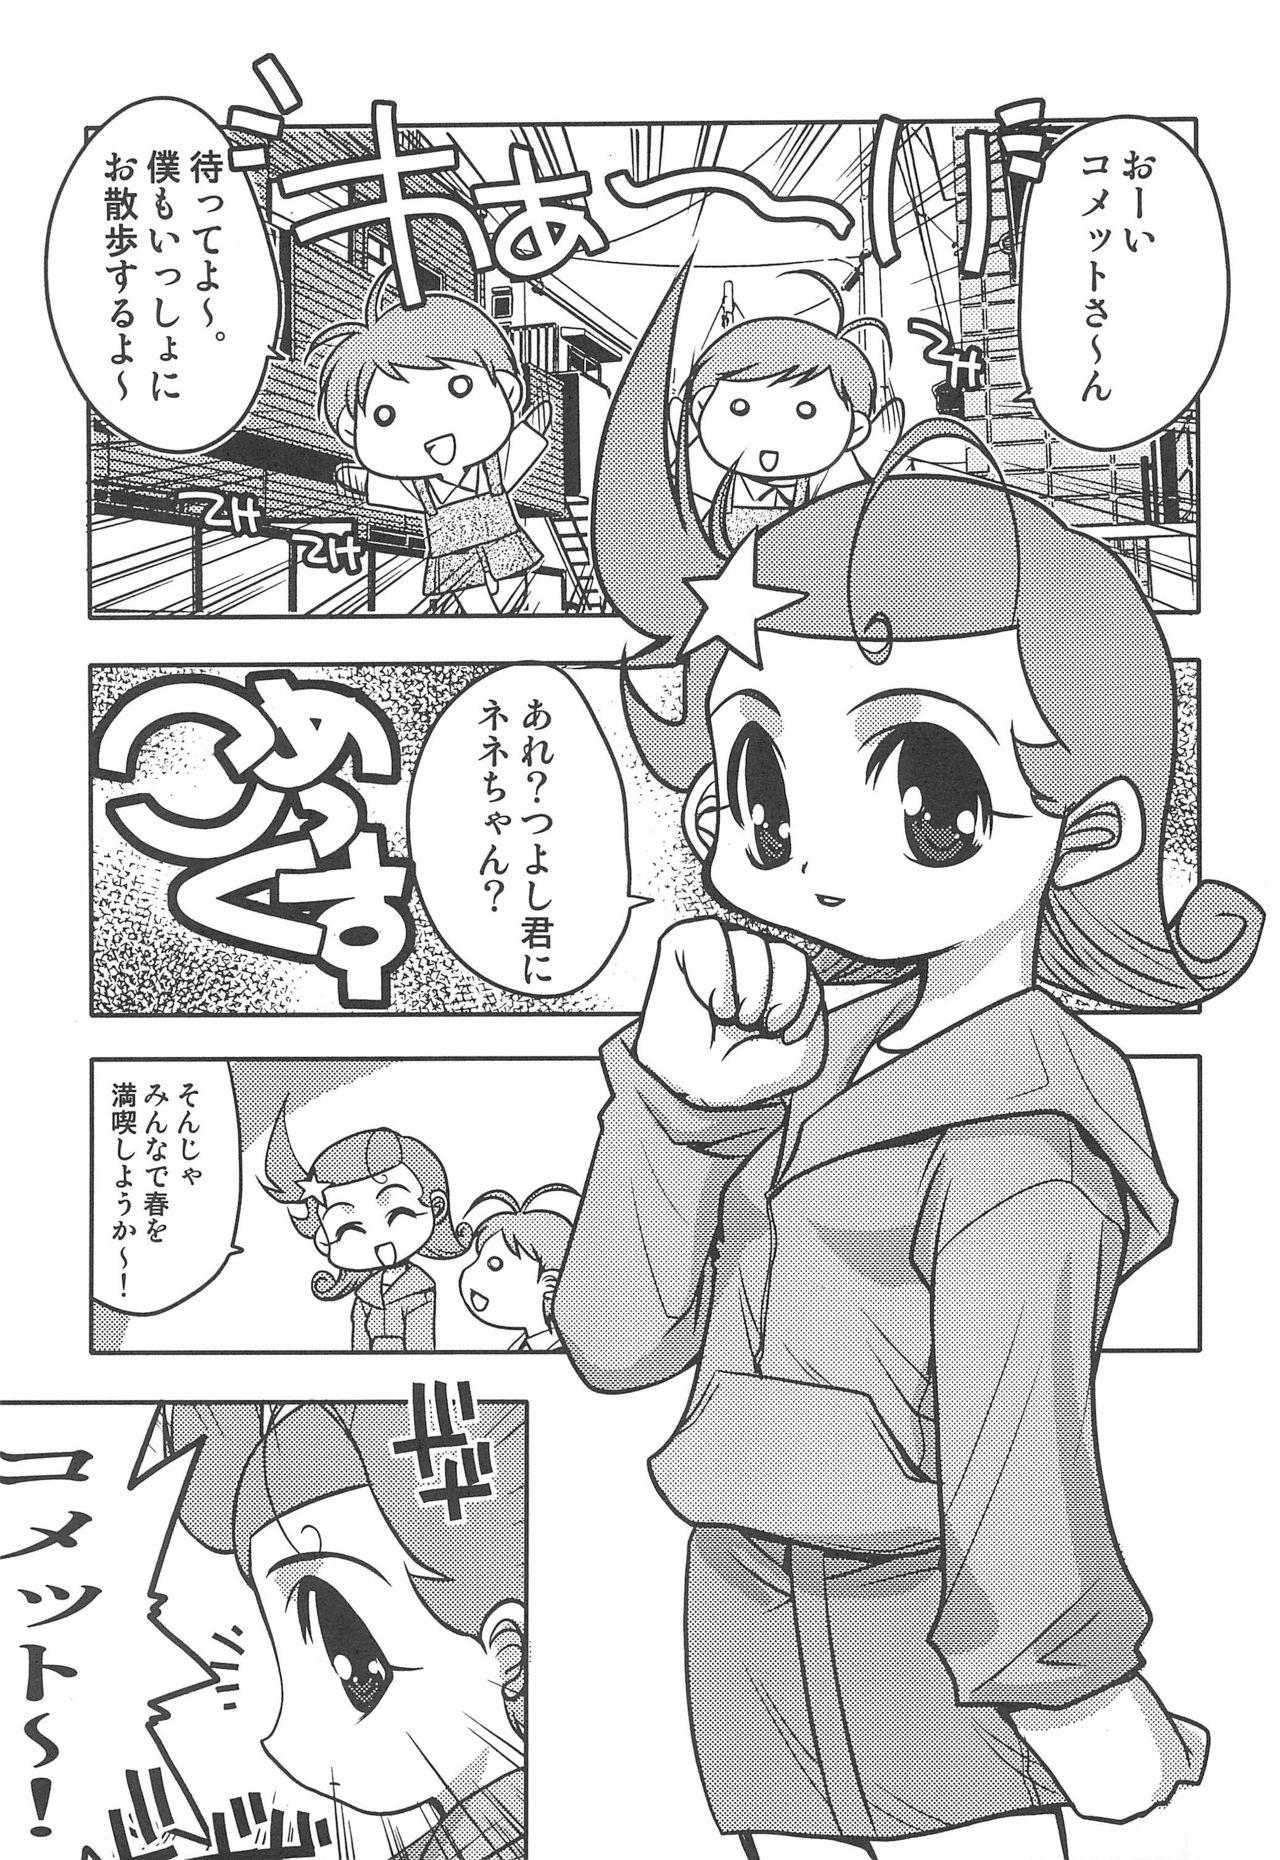 Comet-san Comical Comics 16